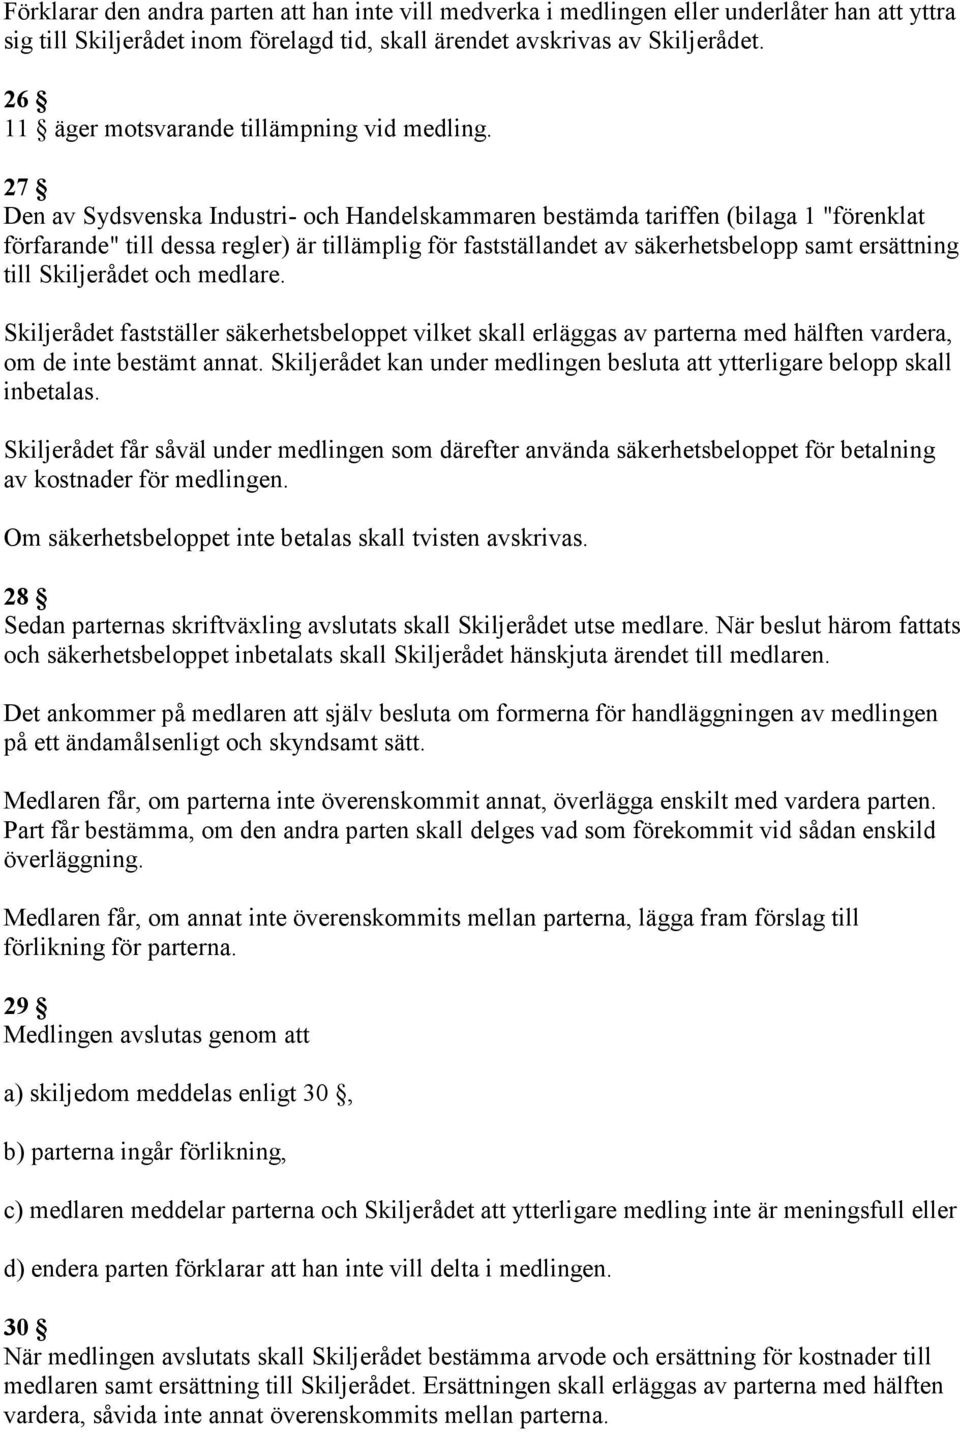 27 Den av Sydsvenska Industri- och Handelskammaren bestämda tariffen (bilaga 1 "förenklat förfarande" till dessa regler) är tillämplig för fastställandet av säkerhetsbelopp samt ersättning till